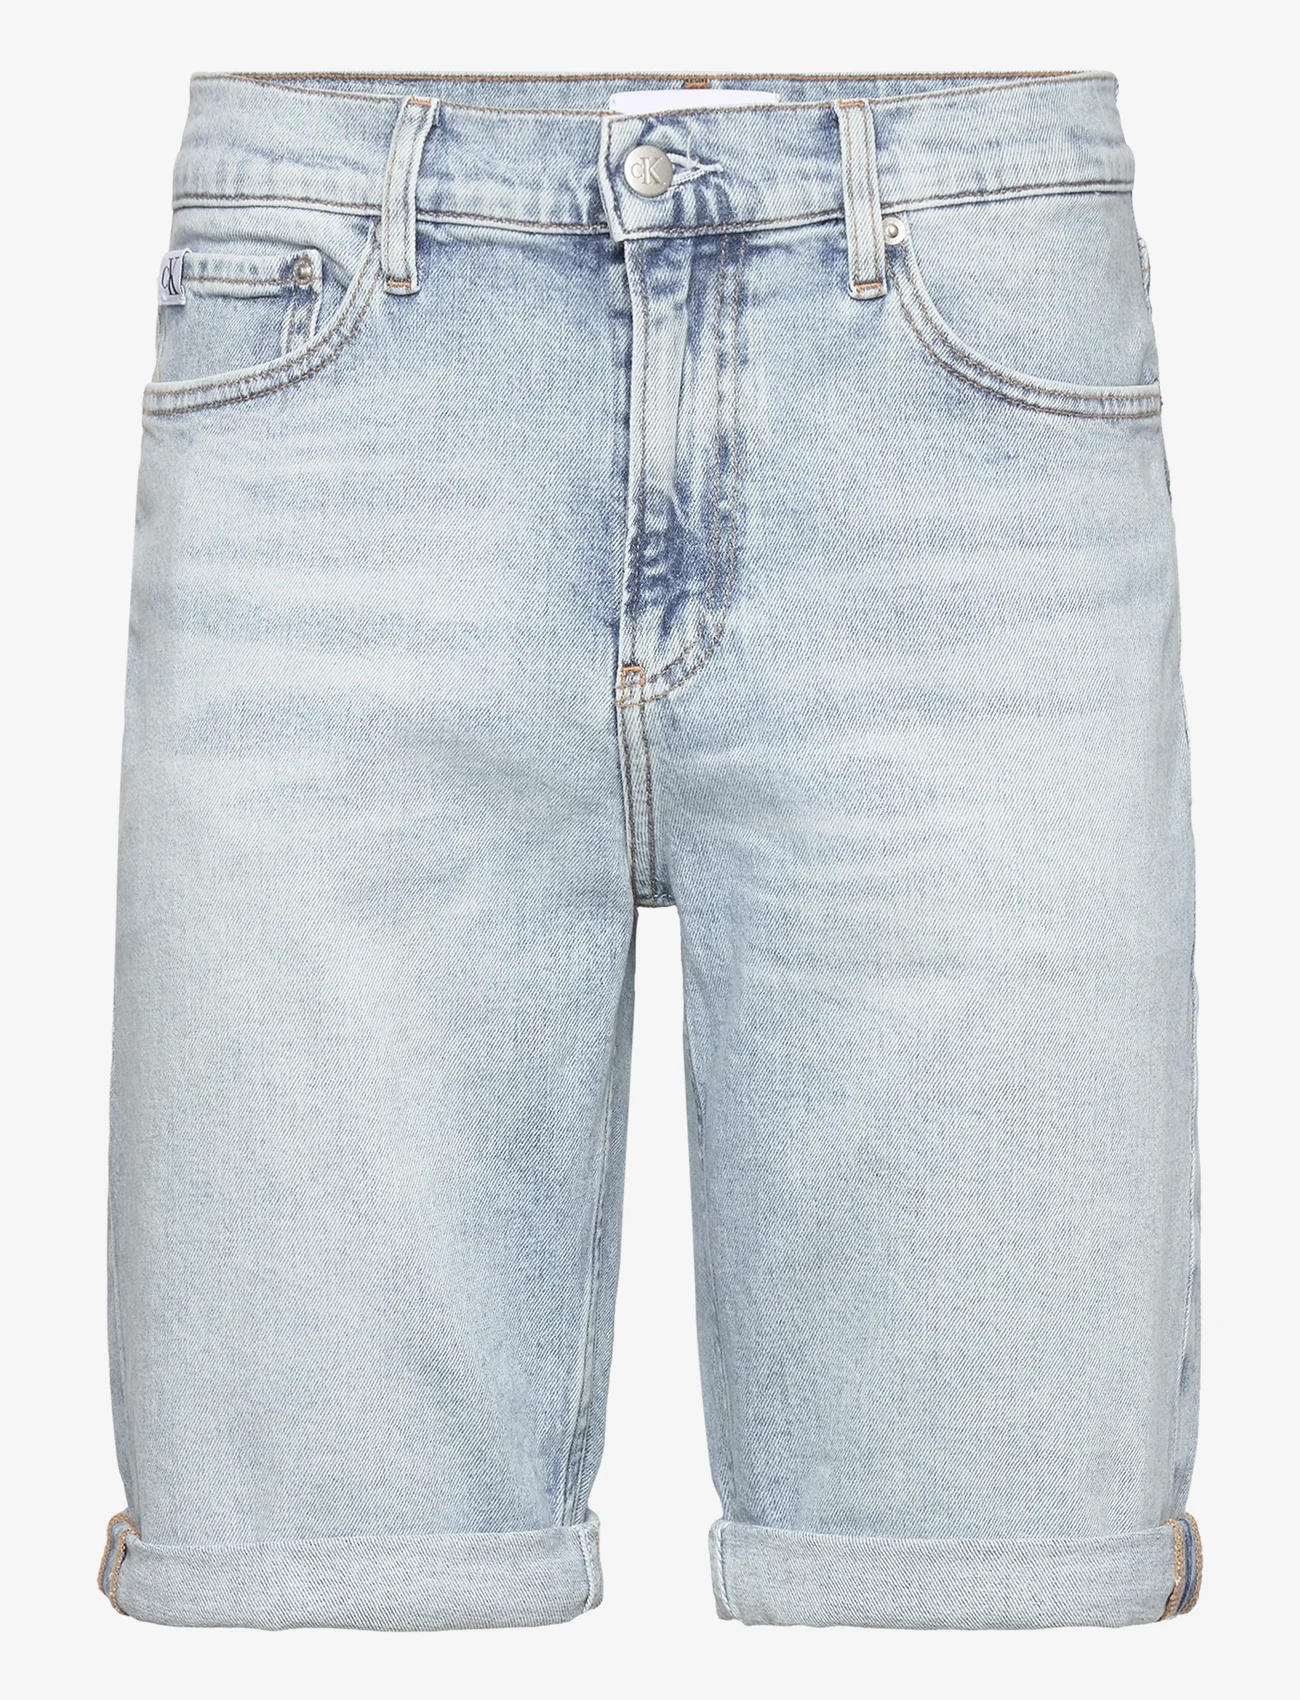 Calvin Klein Jeans - SLIM SHORT - džinsiniai šortai - denim light - 0